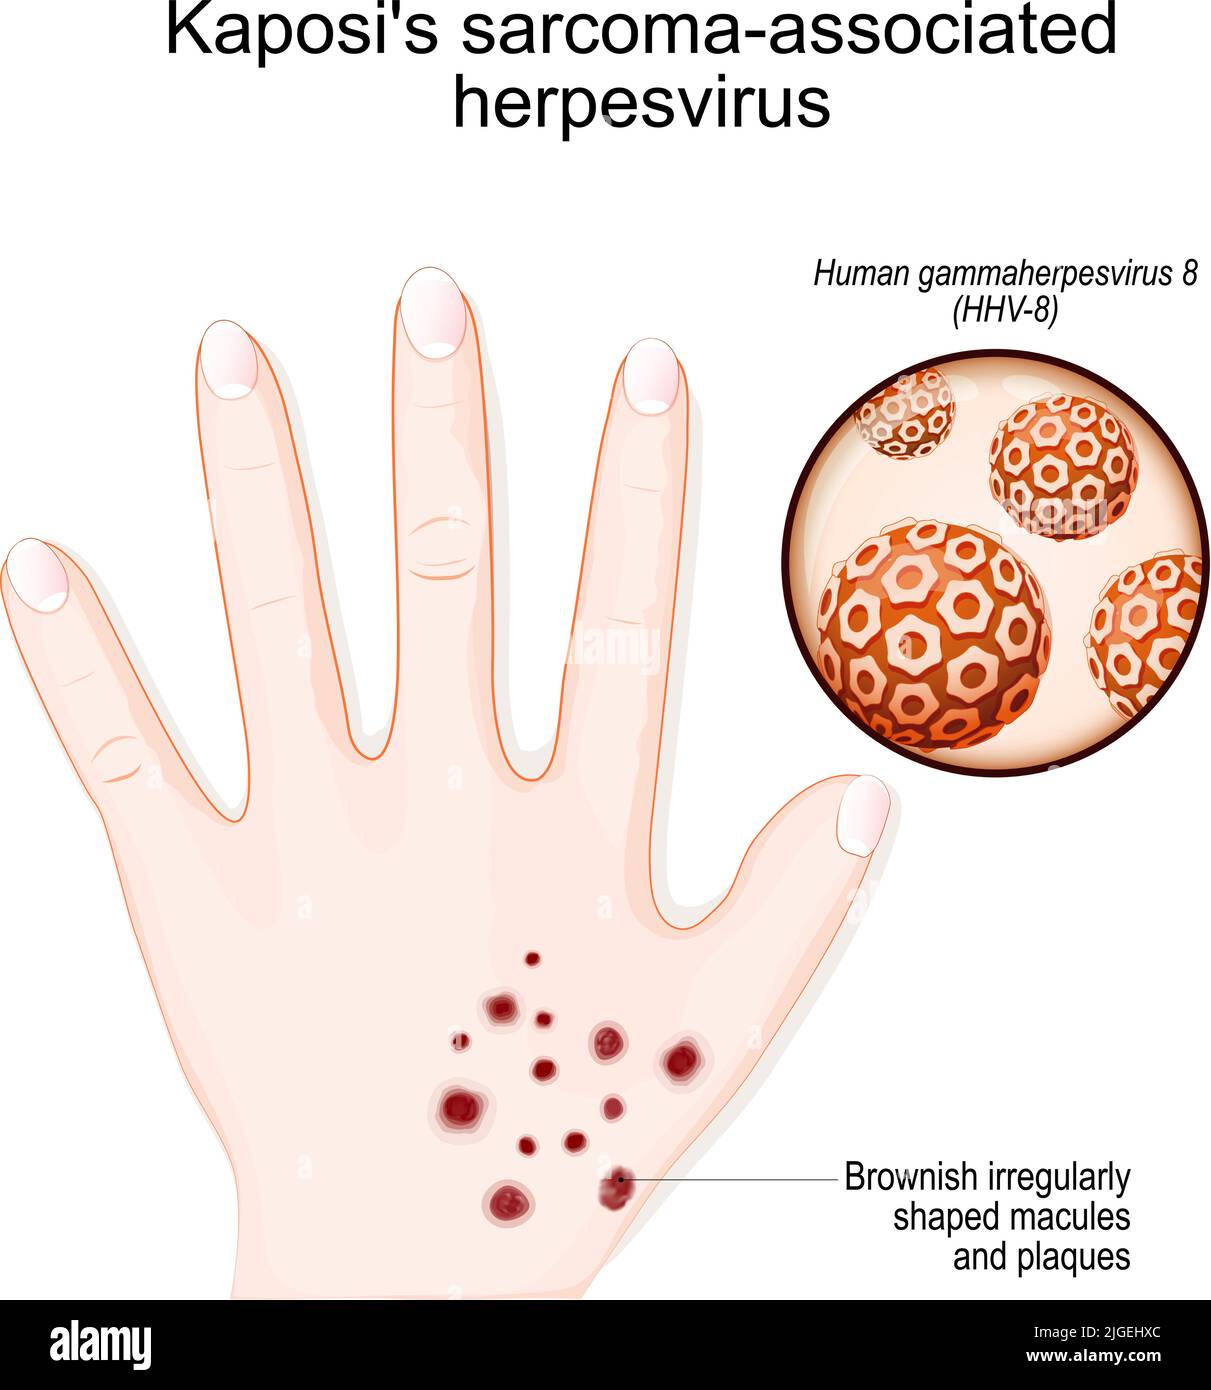 Herpèsvirus associé au sarcome de Kaposi. Main de l'homme avec des macules et des plaques brunâtres de forme irrégulière. Gros plan du gammaherpèsvirus humain (HHV-8) Illustration de Vecteur